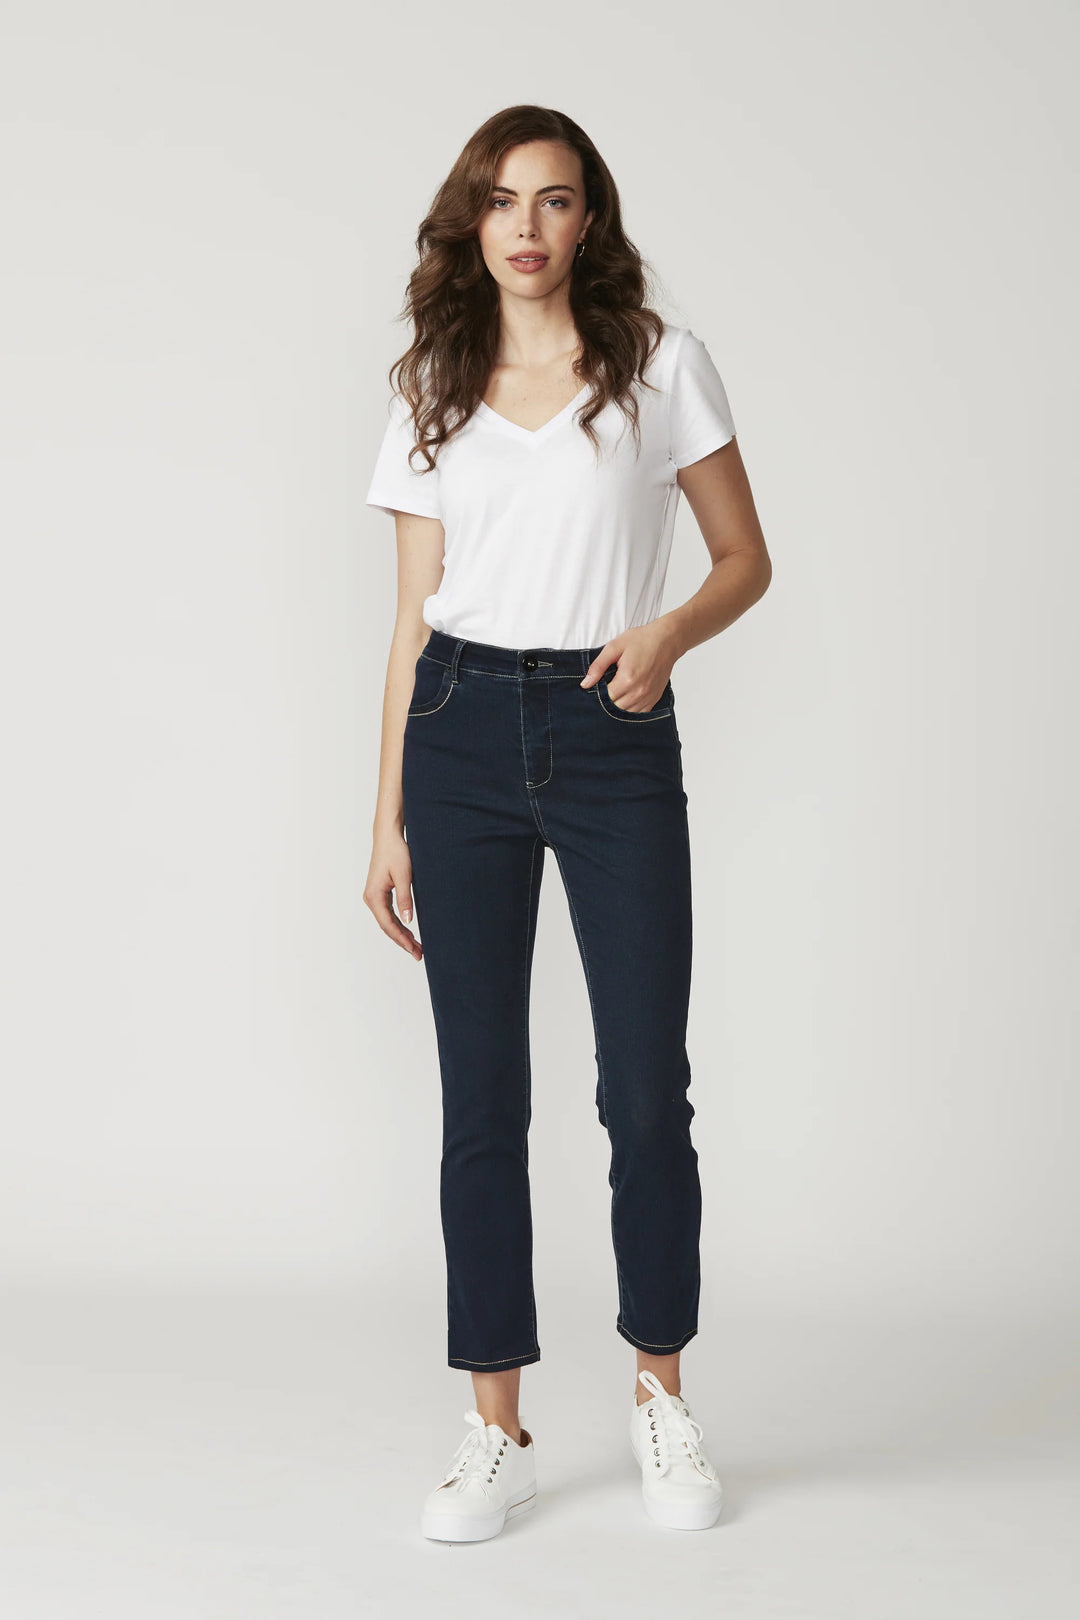 Lania Vienna Jeans